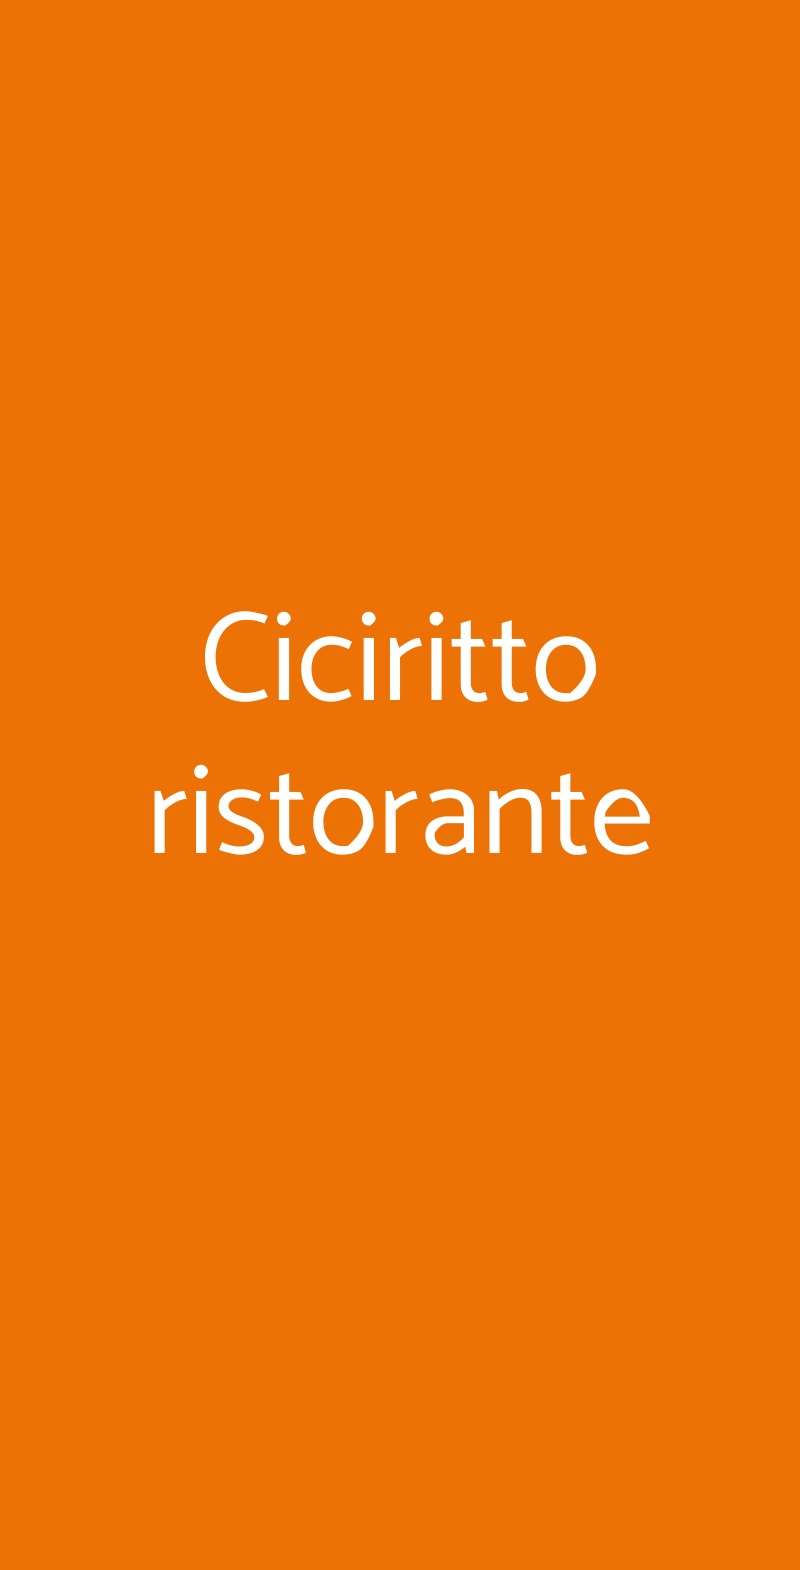 Ciciritto ristorante Cinisi menù 1 pagina